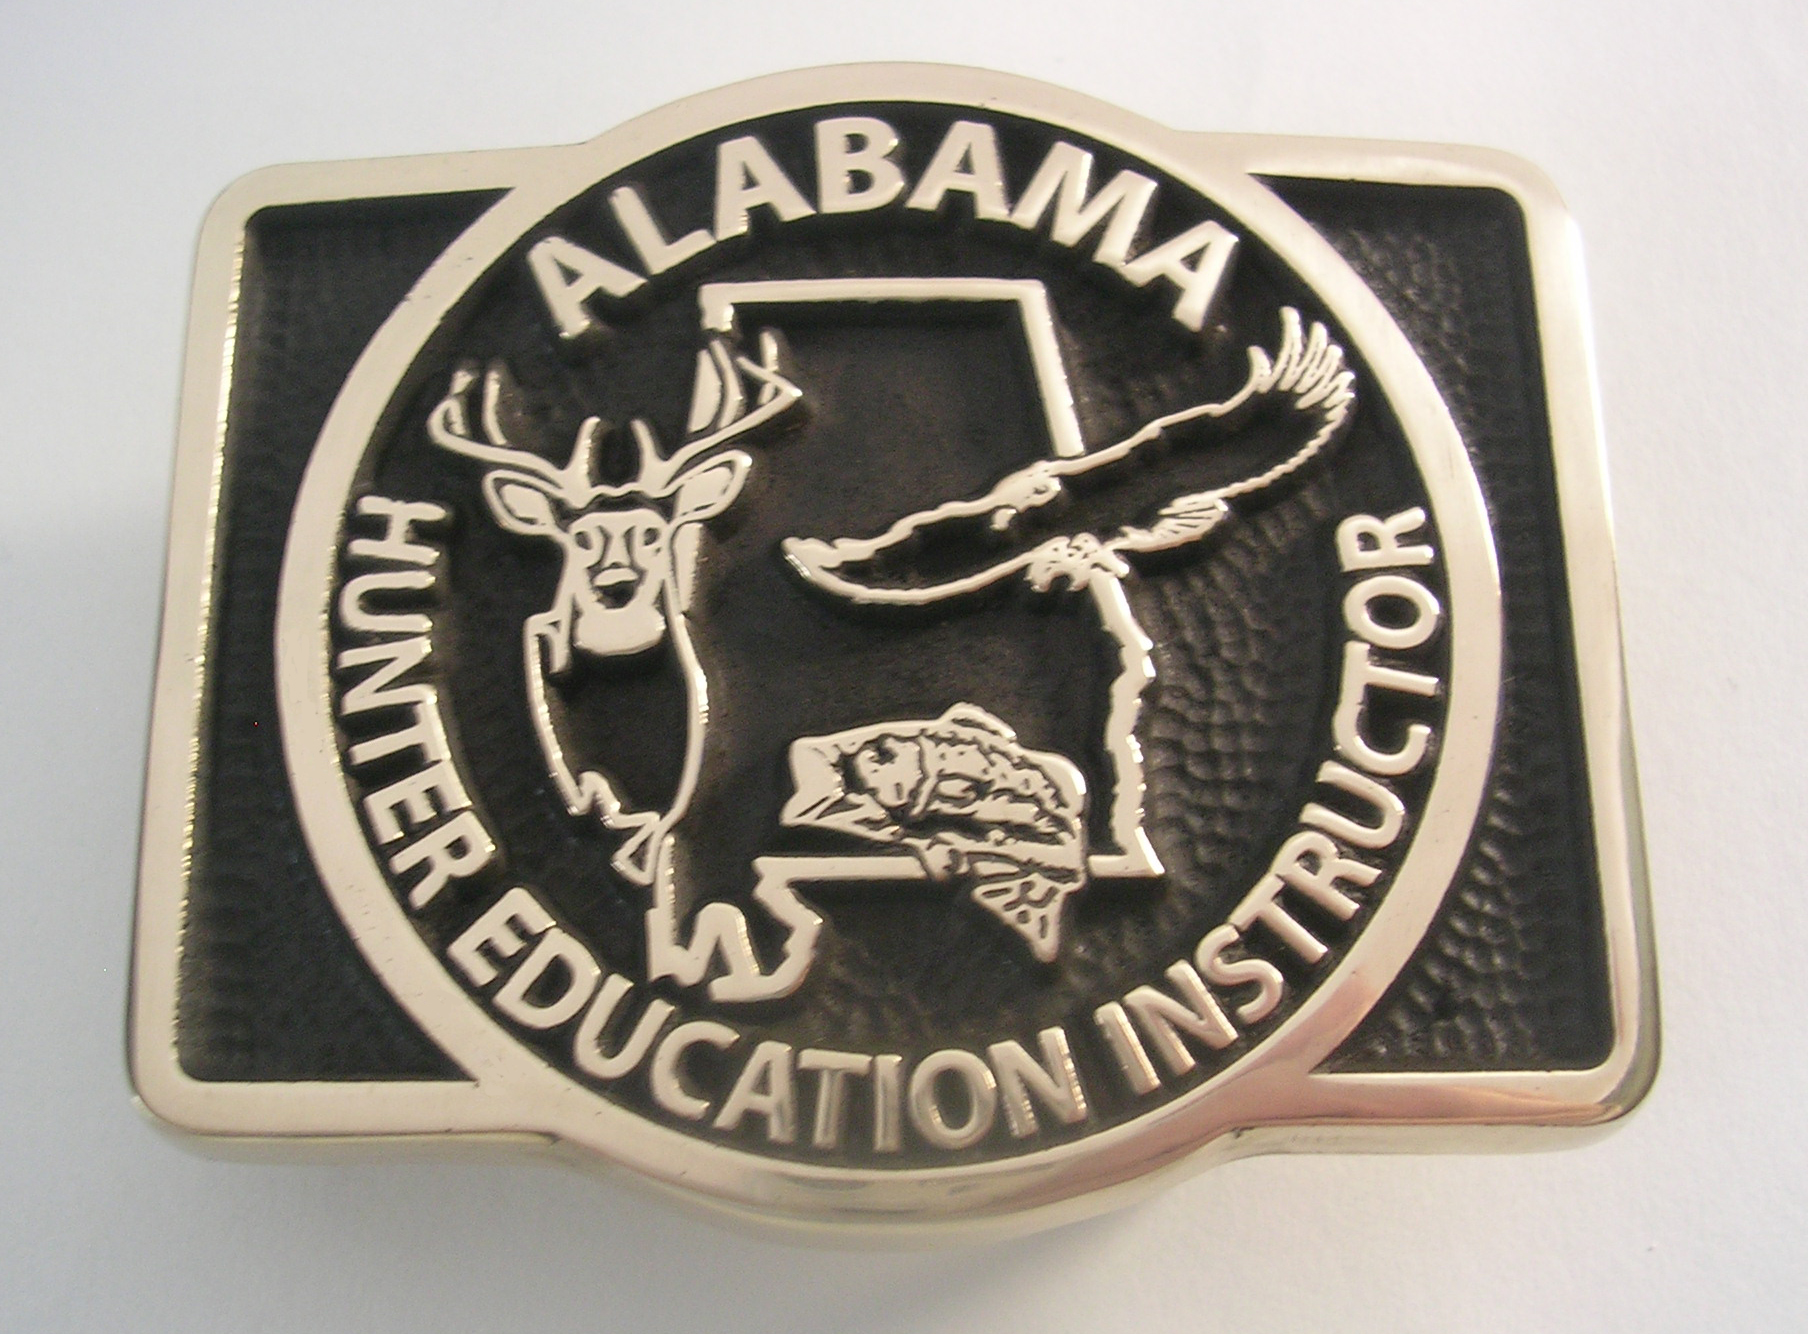 Alabama Hunter Education Instructor Belt Buckle